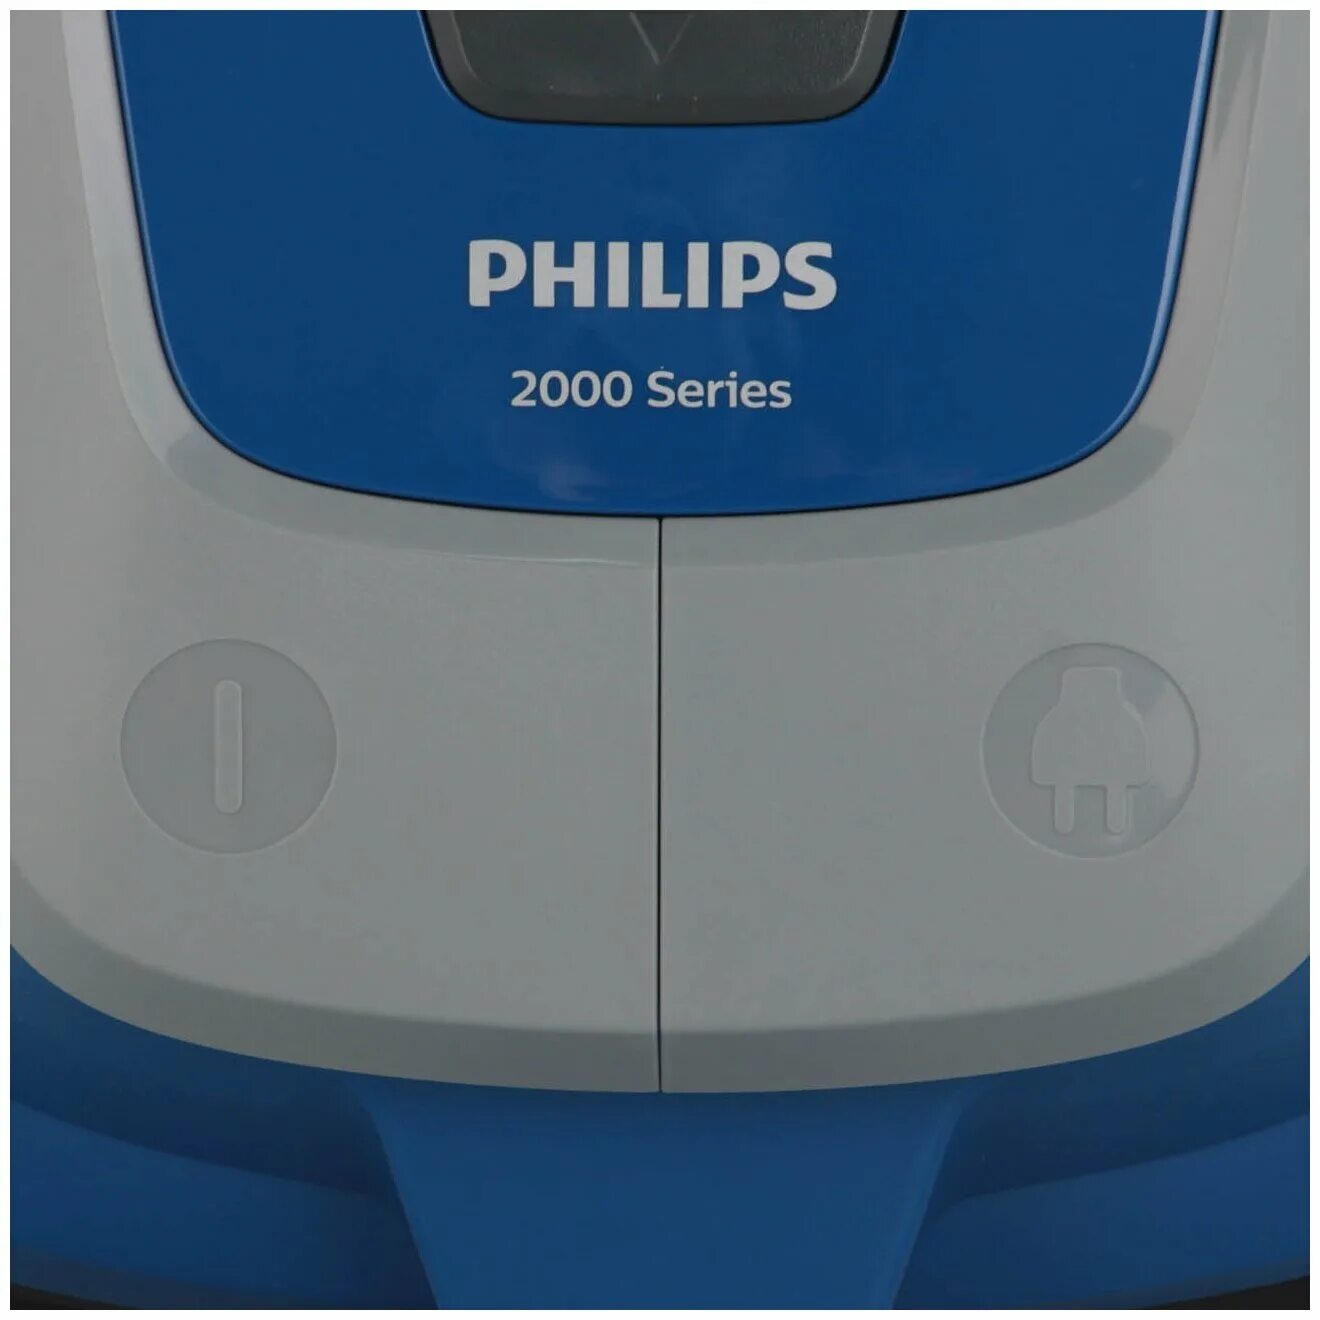 Пылесос филипс 2000 series. Пылесос Philips xb2062/01. Philips xb2022/xb2023. Пылесос Philips xb2022. Пылесос с контейнером для пыли Philips xb2062/01.